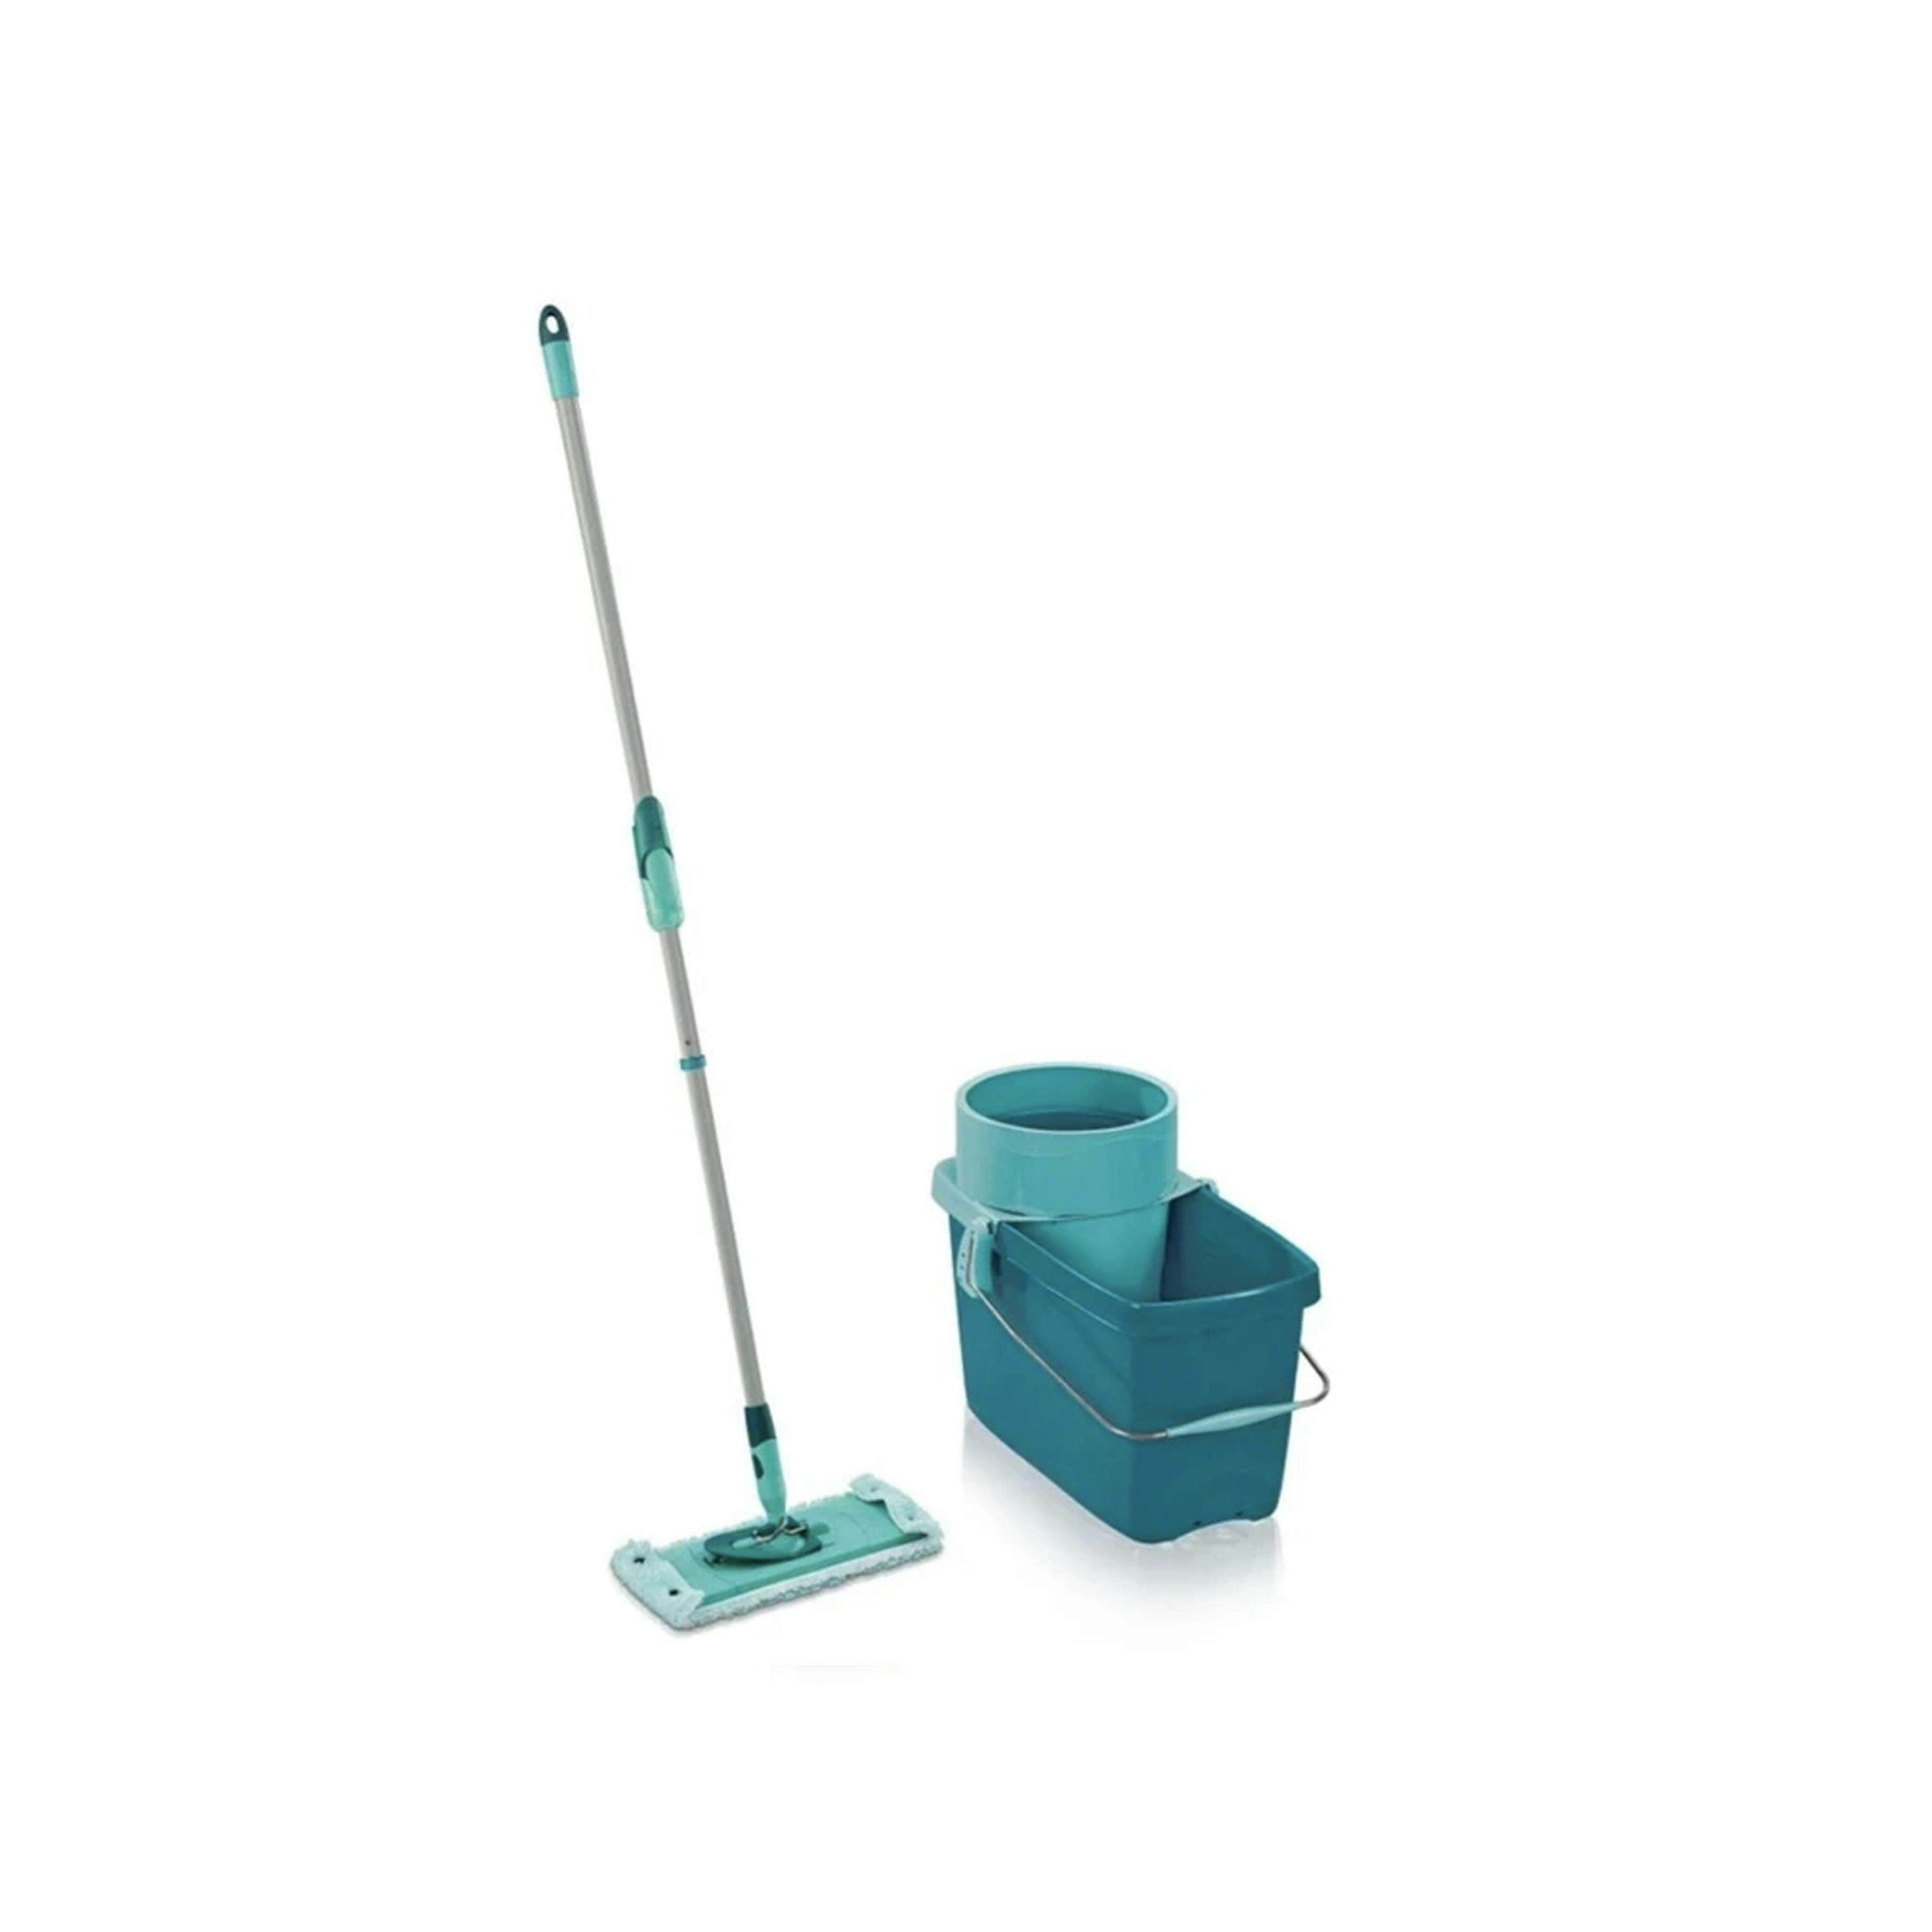 Leifheit - 52019 / Clean Twist - Mop Plastique Bleu Turquoise